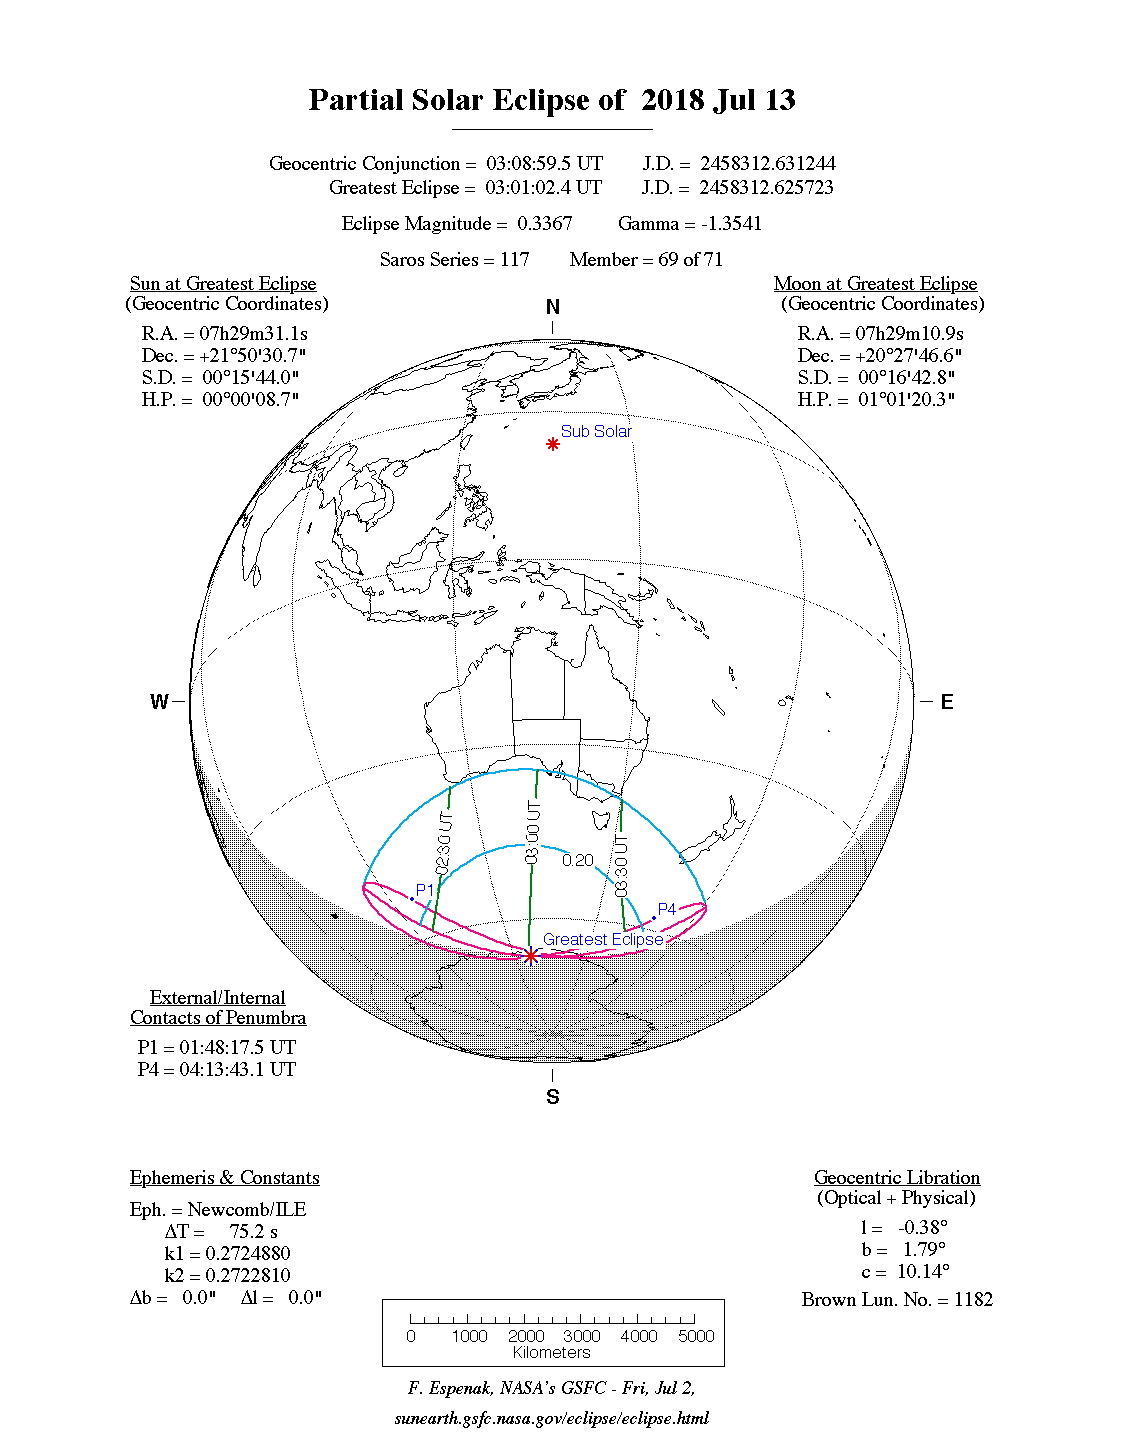 Verlauf der Partiellen Sonnenfinsternis am 13.07.2018